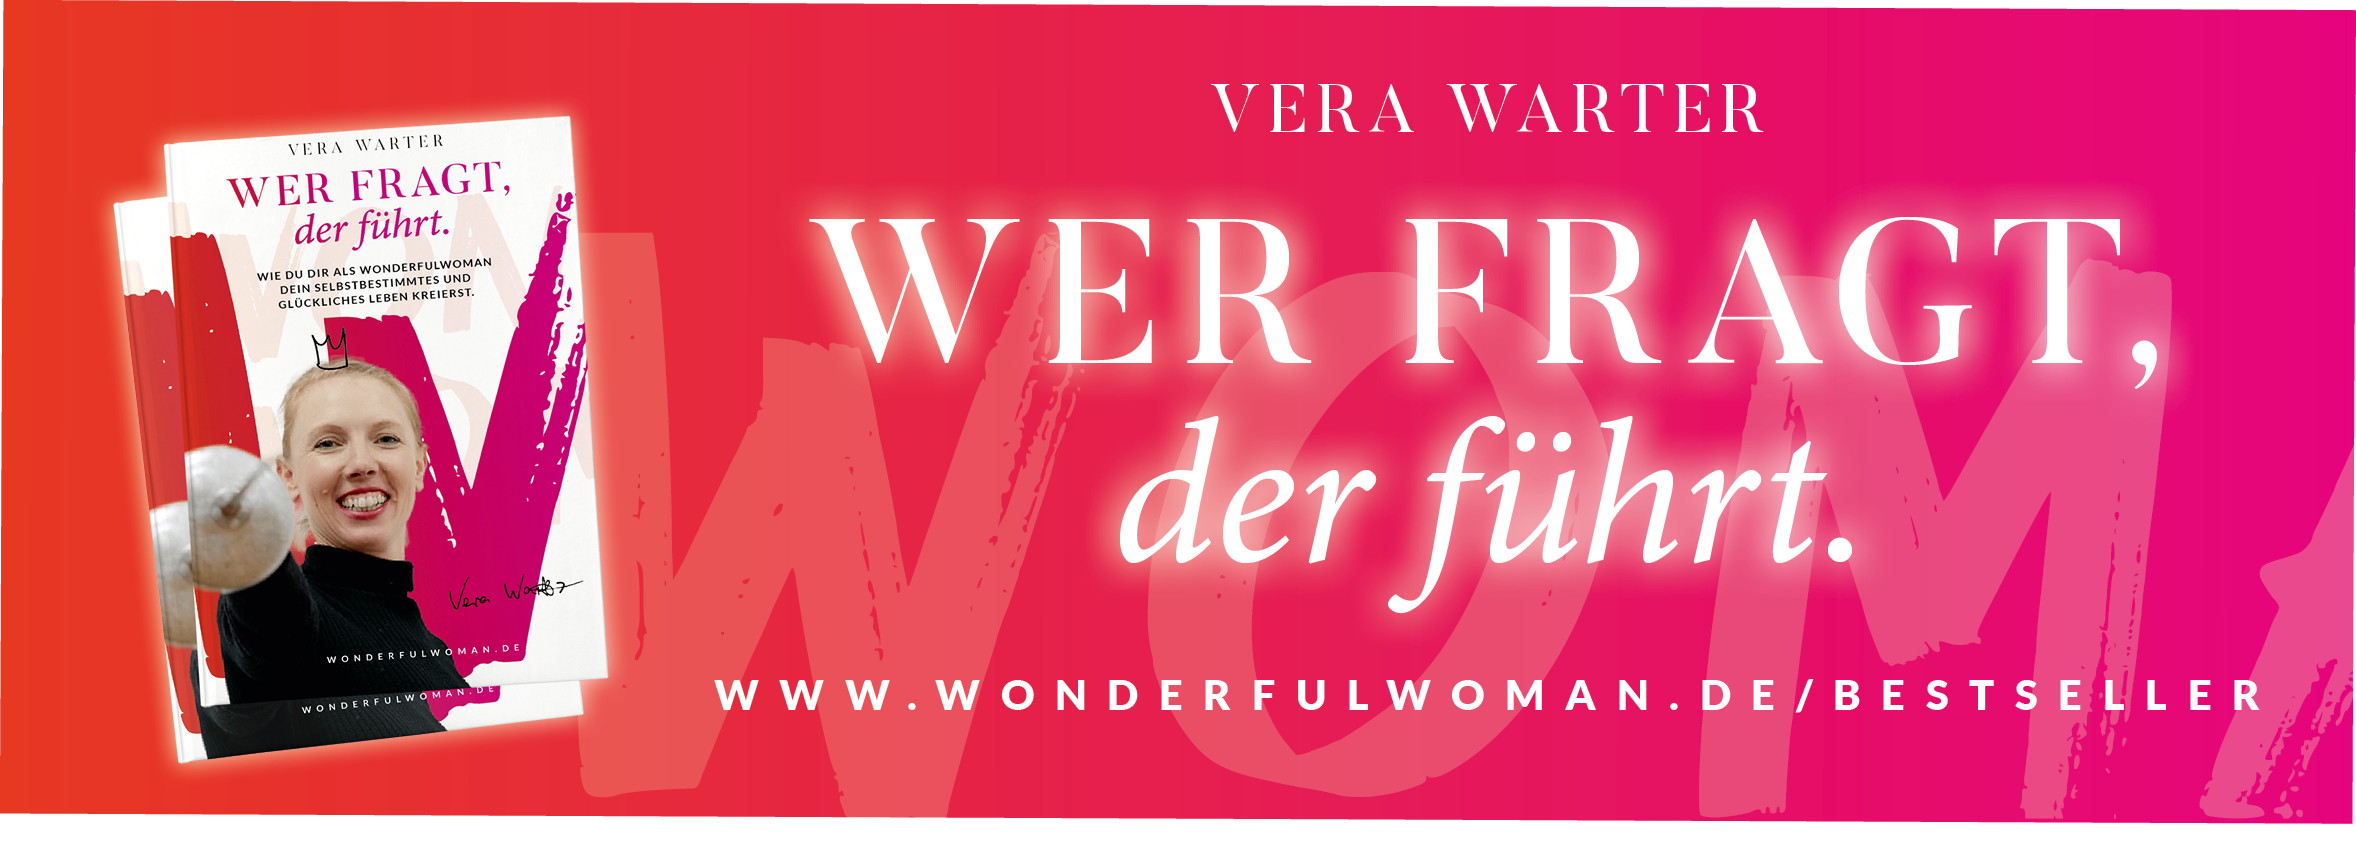 Wer fragt der führt, Buch, WonderfulWoman by Vera Warter